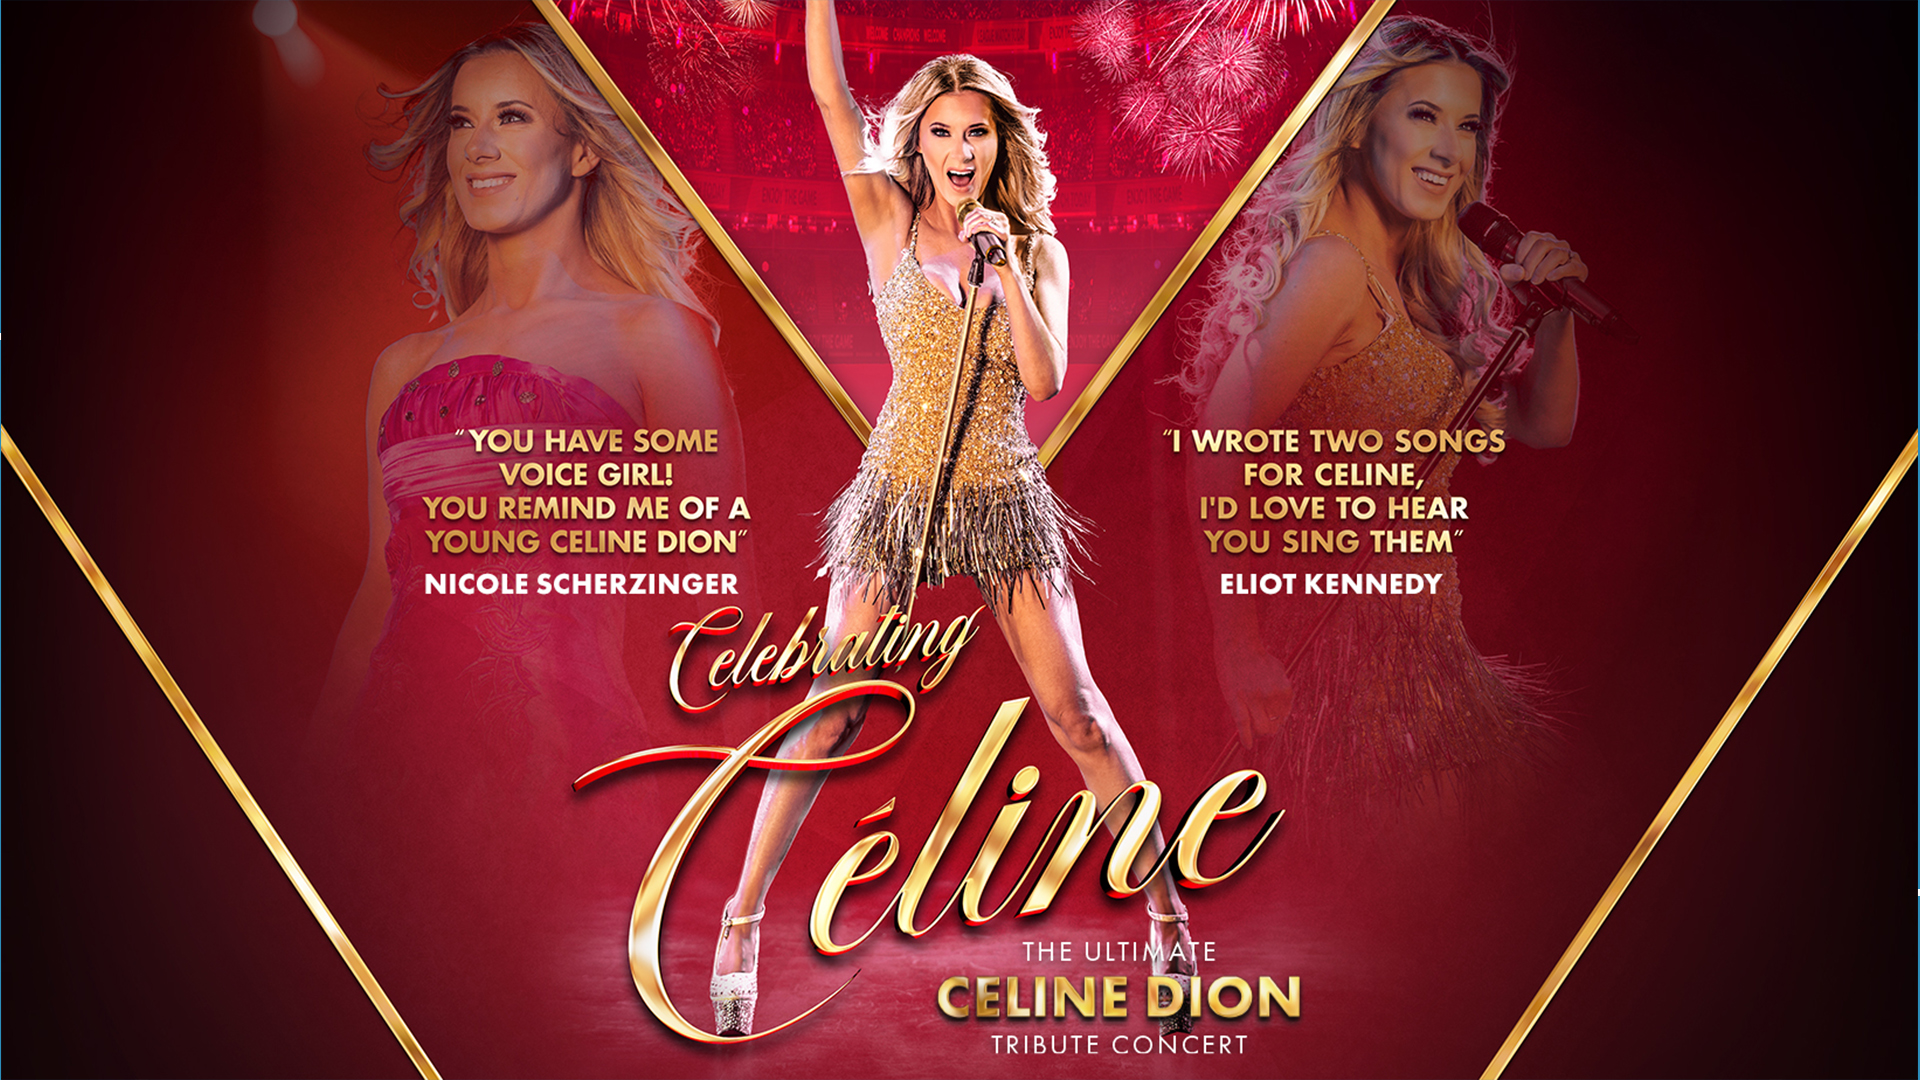 Celebrating Céline &#8211; The Ultimate Céline Dion Tribute Concert